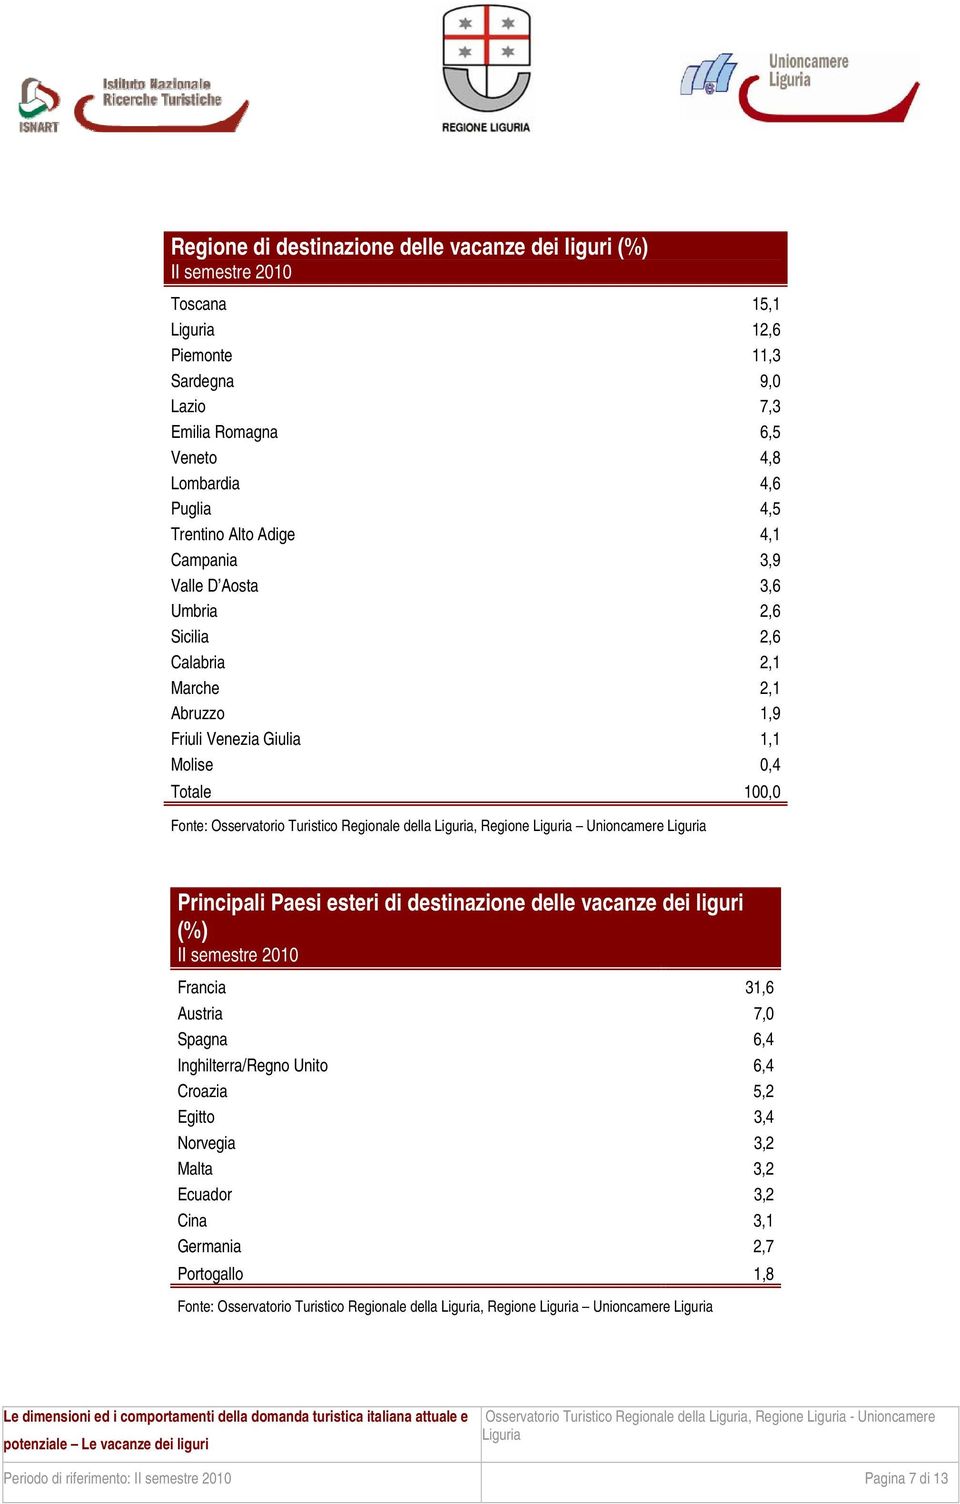 Principali Paesi esteri di destinazione delle vacanze dei liguri (%) Francia 31,6 Austria 7,0 Spagna 6,4 Inghilterra/Regno Unito 6,4 Croazia 5,2 Egitto 3,4 Norvegia 3,2 Malta 3,2 Ecuador 3,2 Cina